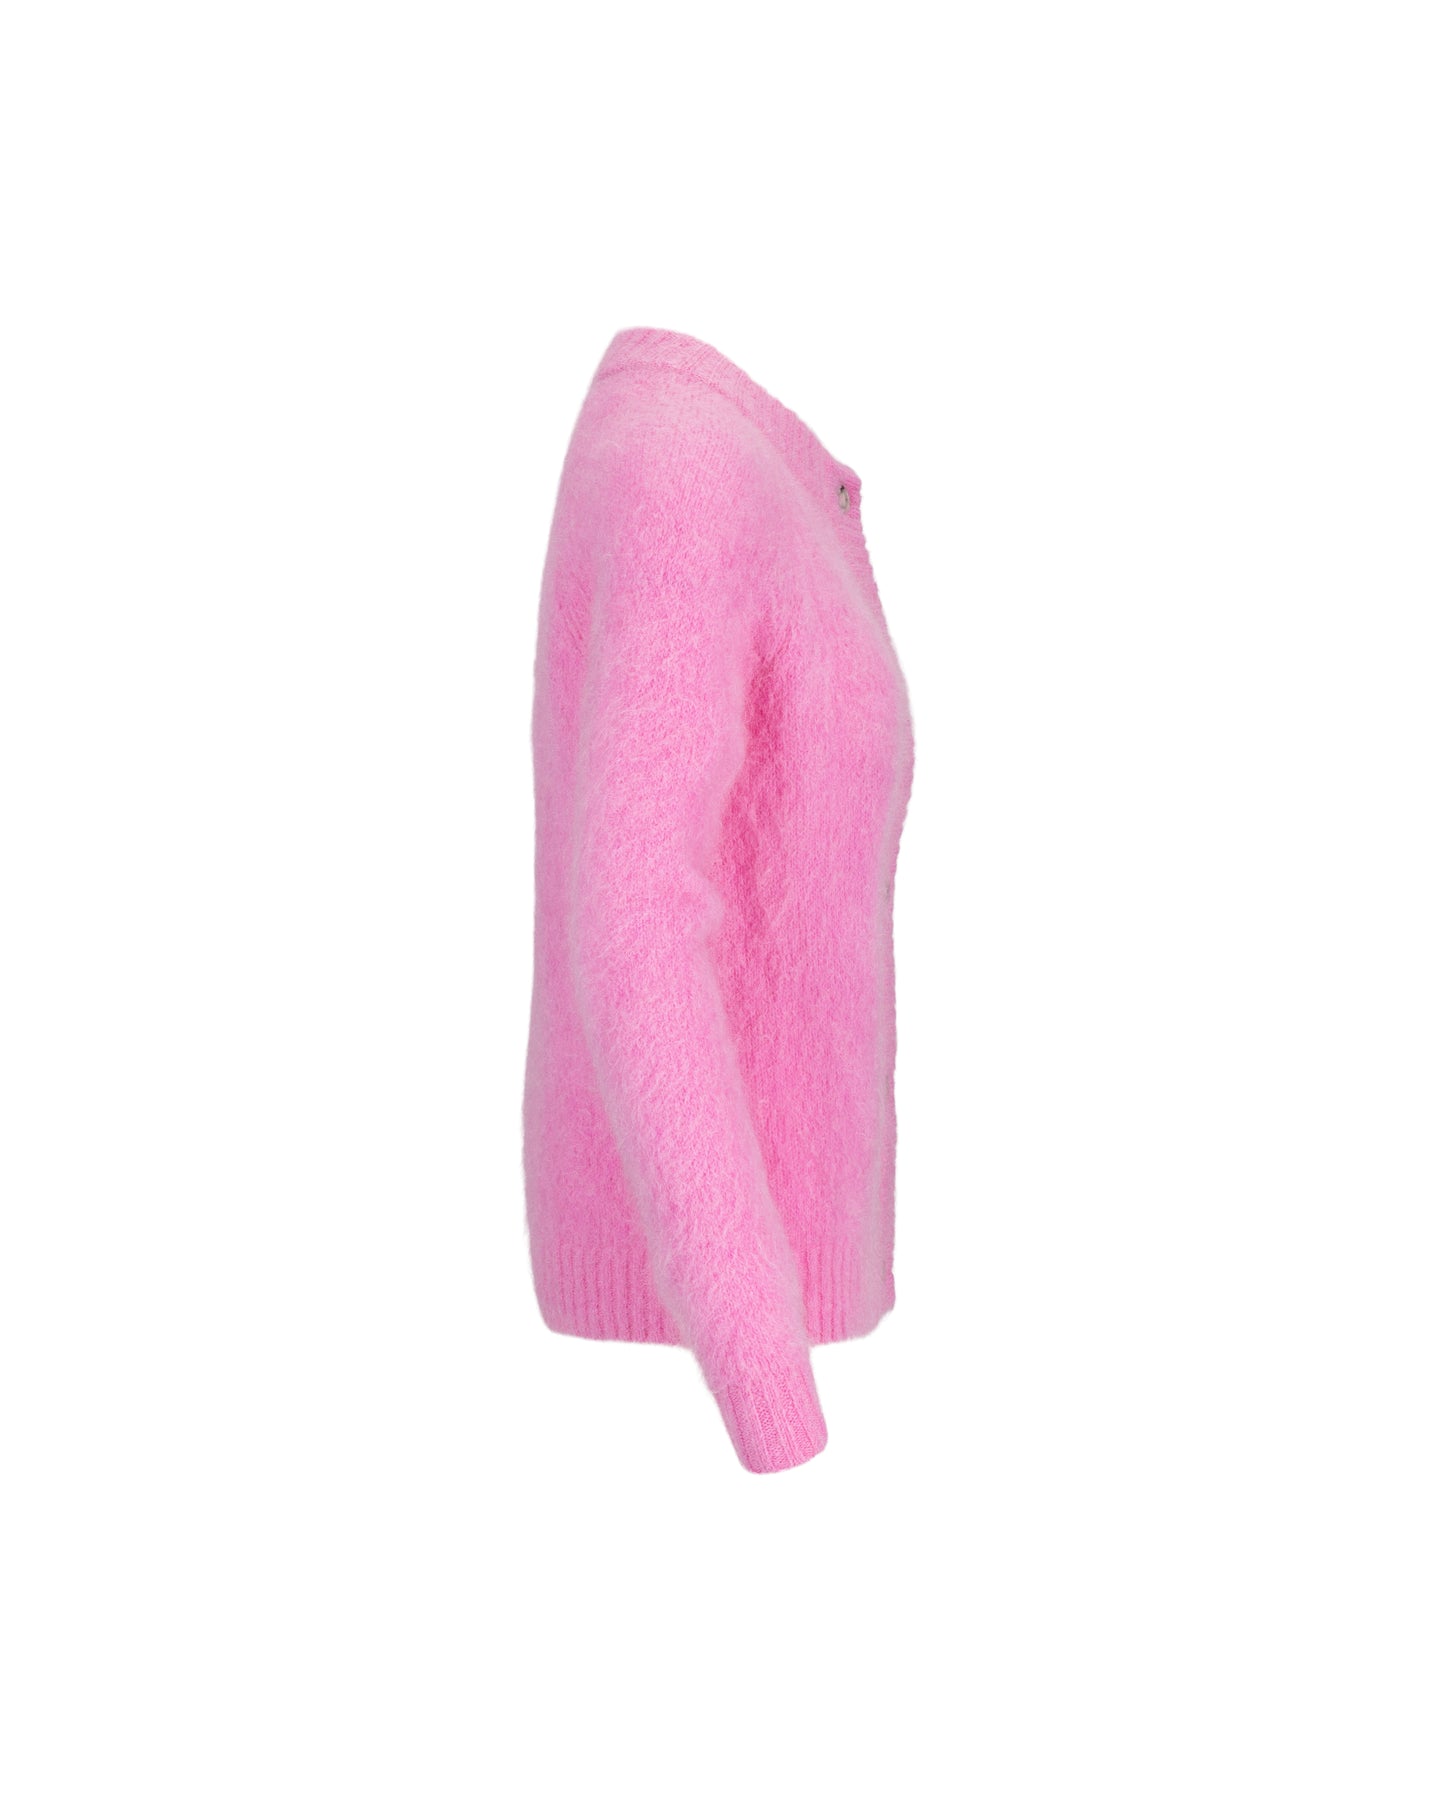 Monty Cardigan Reb - Hot Pink